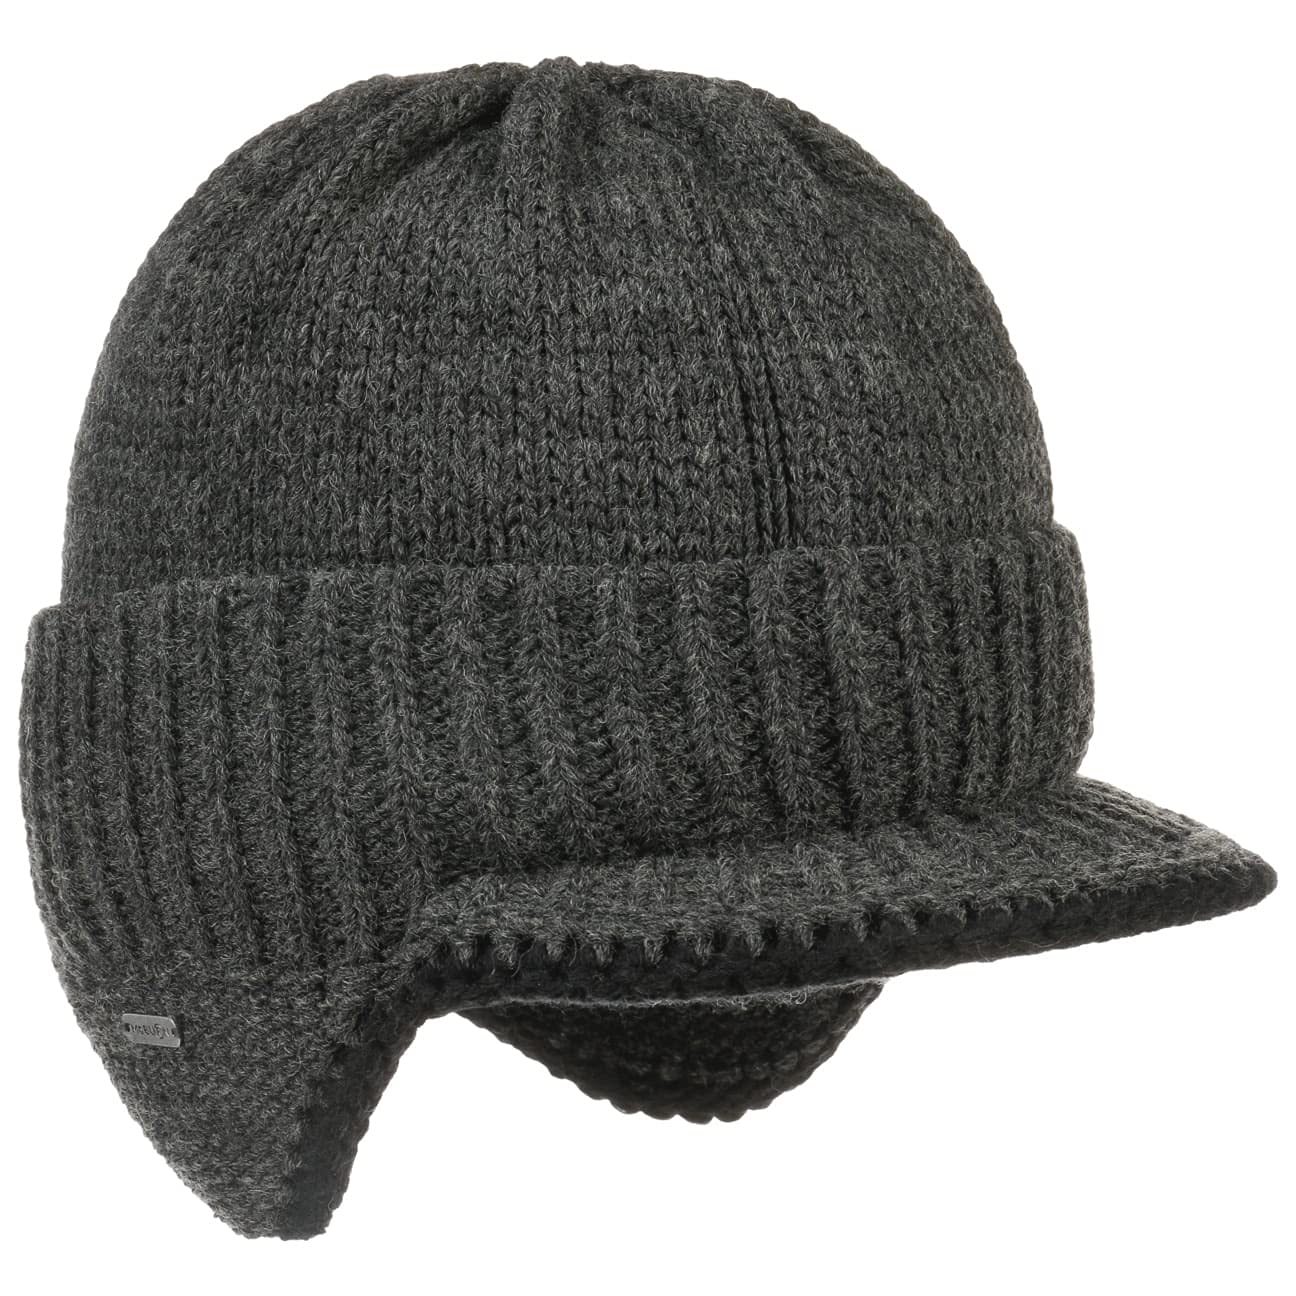 McBURN Dinder Peak Pull-On Hat Damen/Herren - Made in Italy Wintermütze Wollmütze Herrenmütze mit Futter, Futter Herbst-Winter - L/XL (58-61 cm) anthrazit